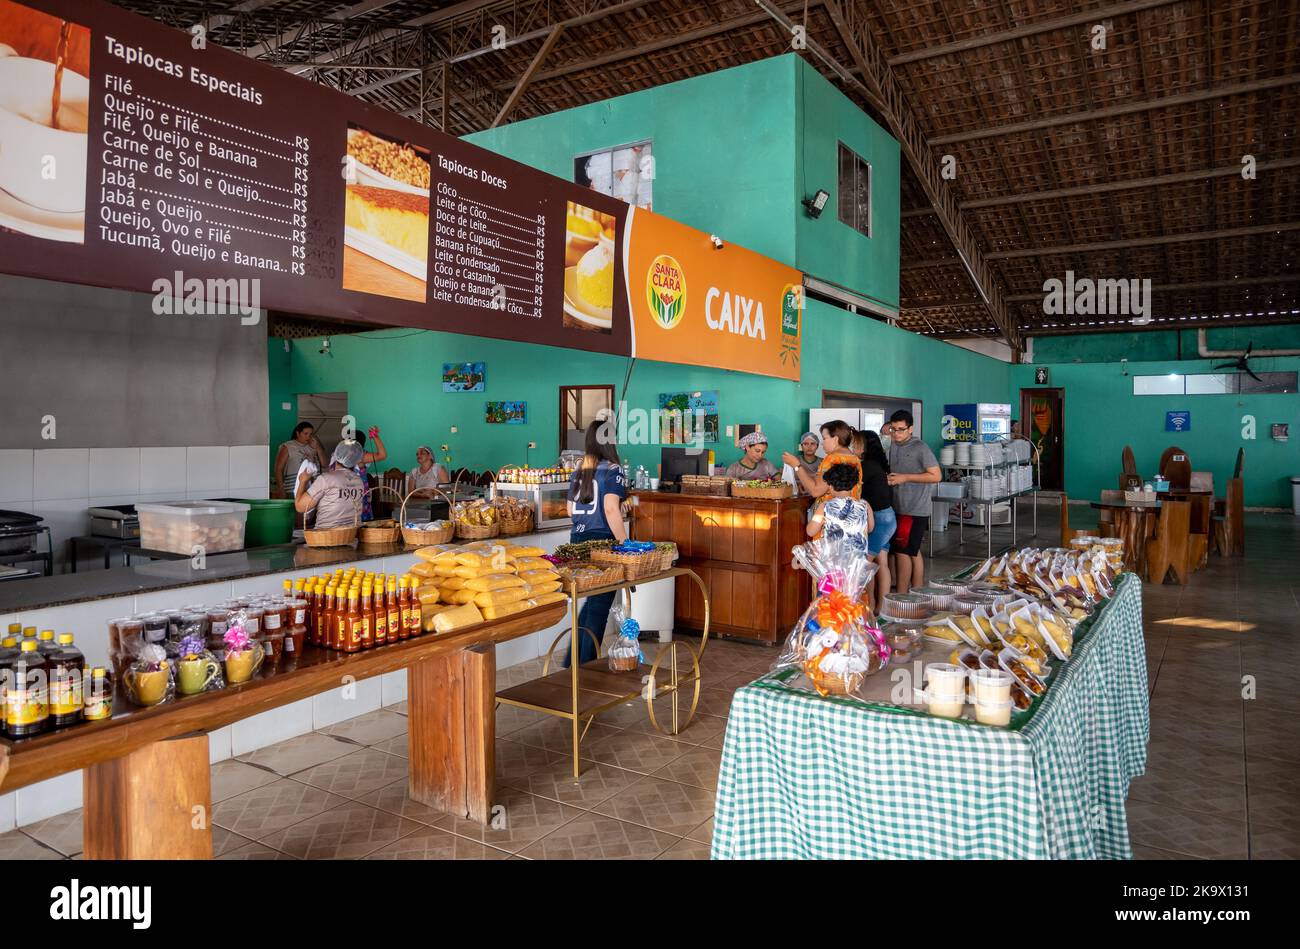 Les clients magasinent dans un café et un restaurant locaux. Amazonas, Brésil. Banque D'Images